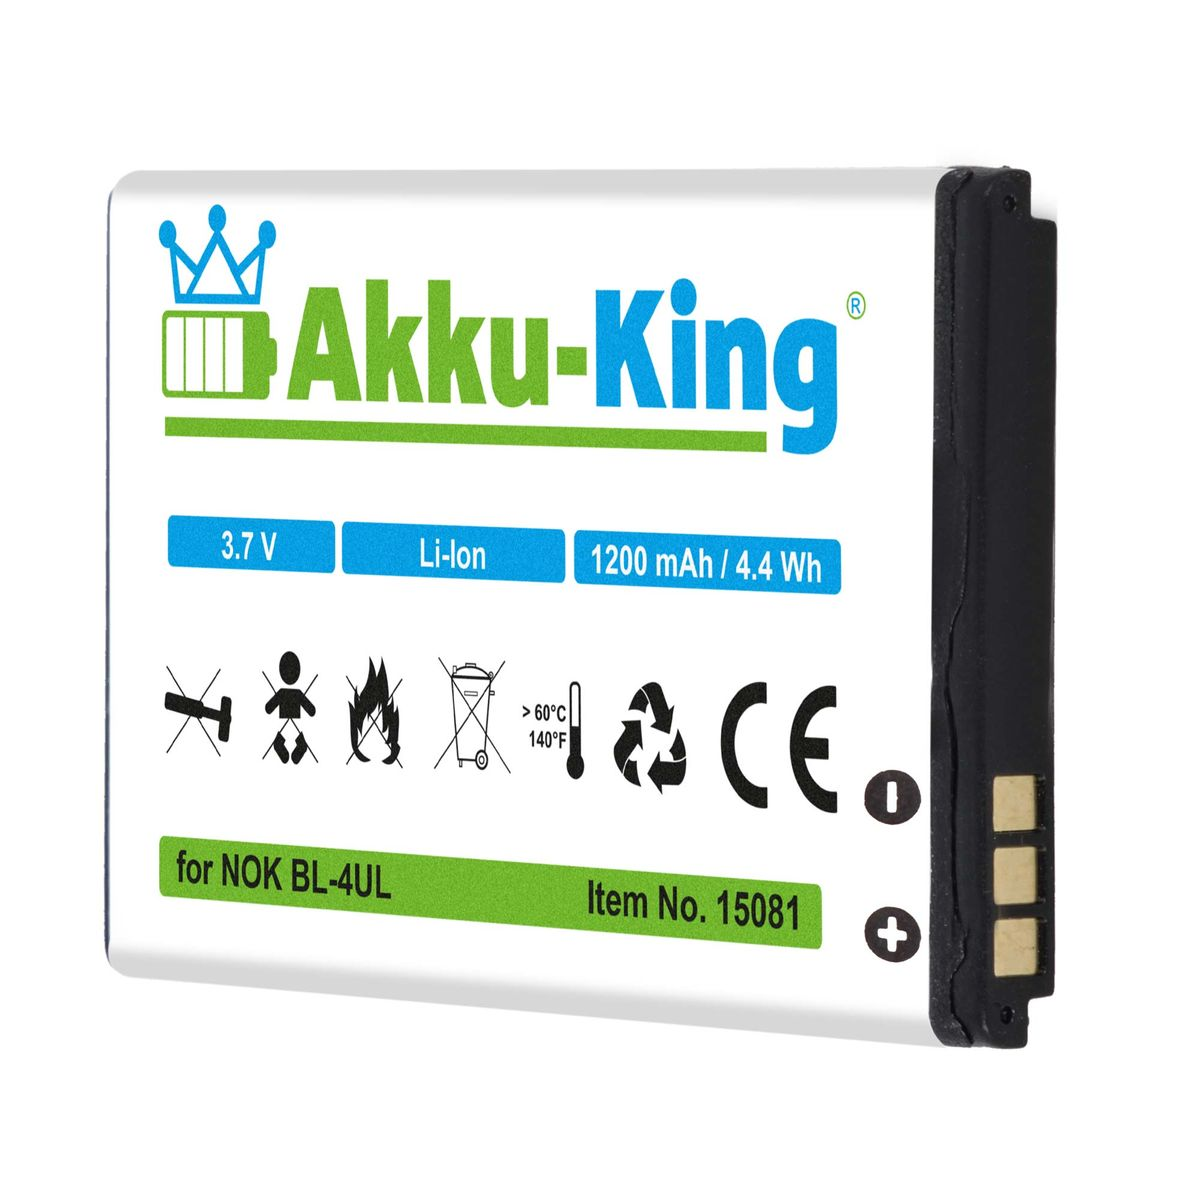 1200mAh Handy-Akku, AKKU-KING Akku Li-Ion mit Nokia kompatibel Volt, BL-4UL 3.7